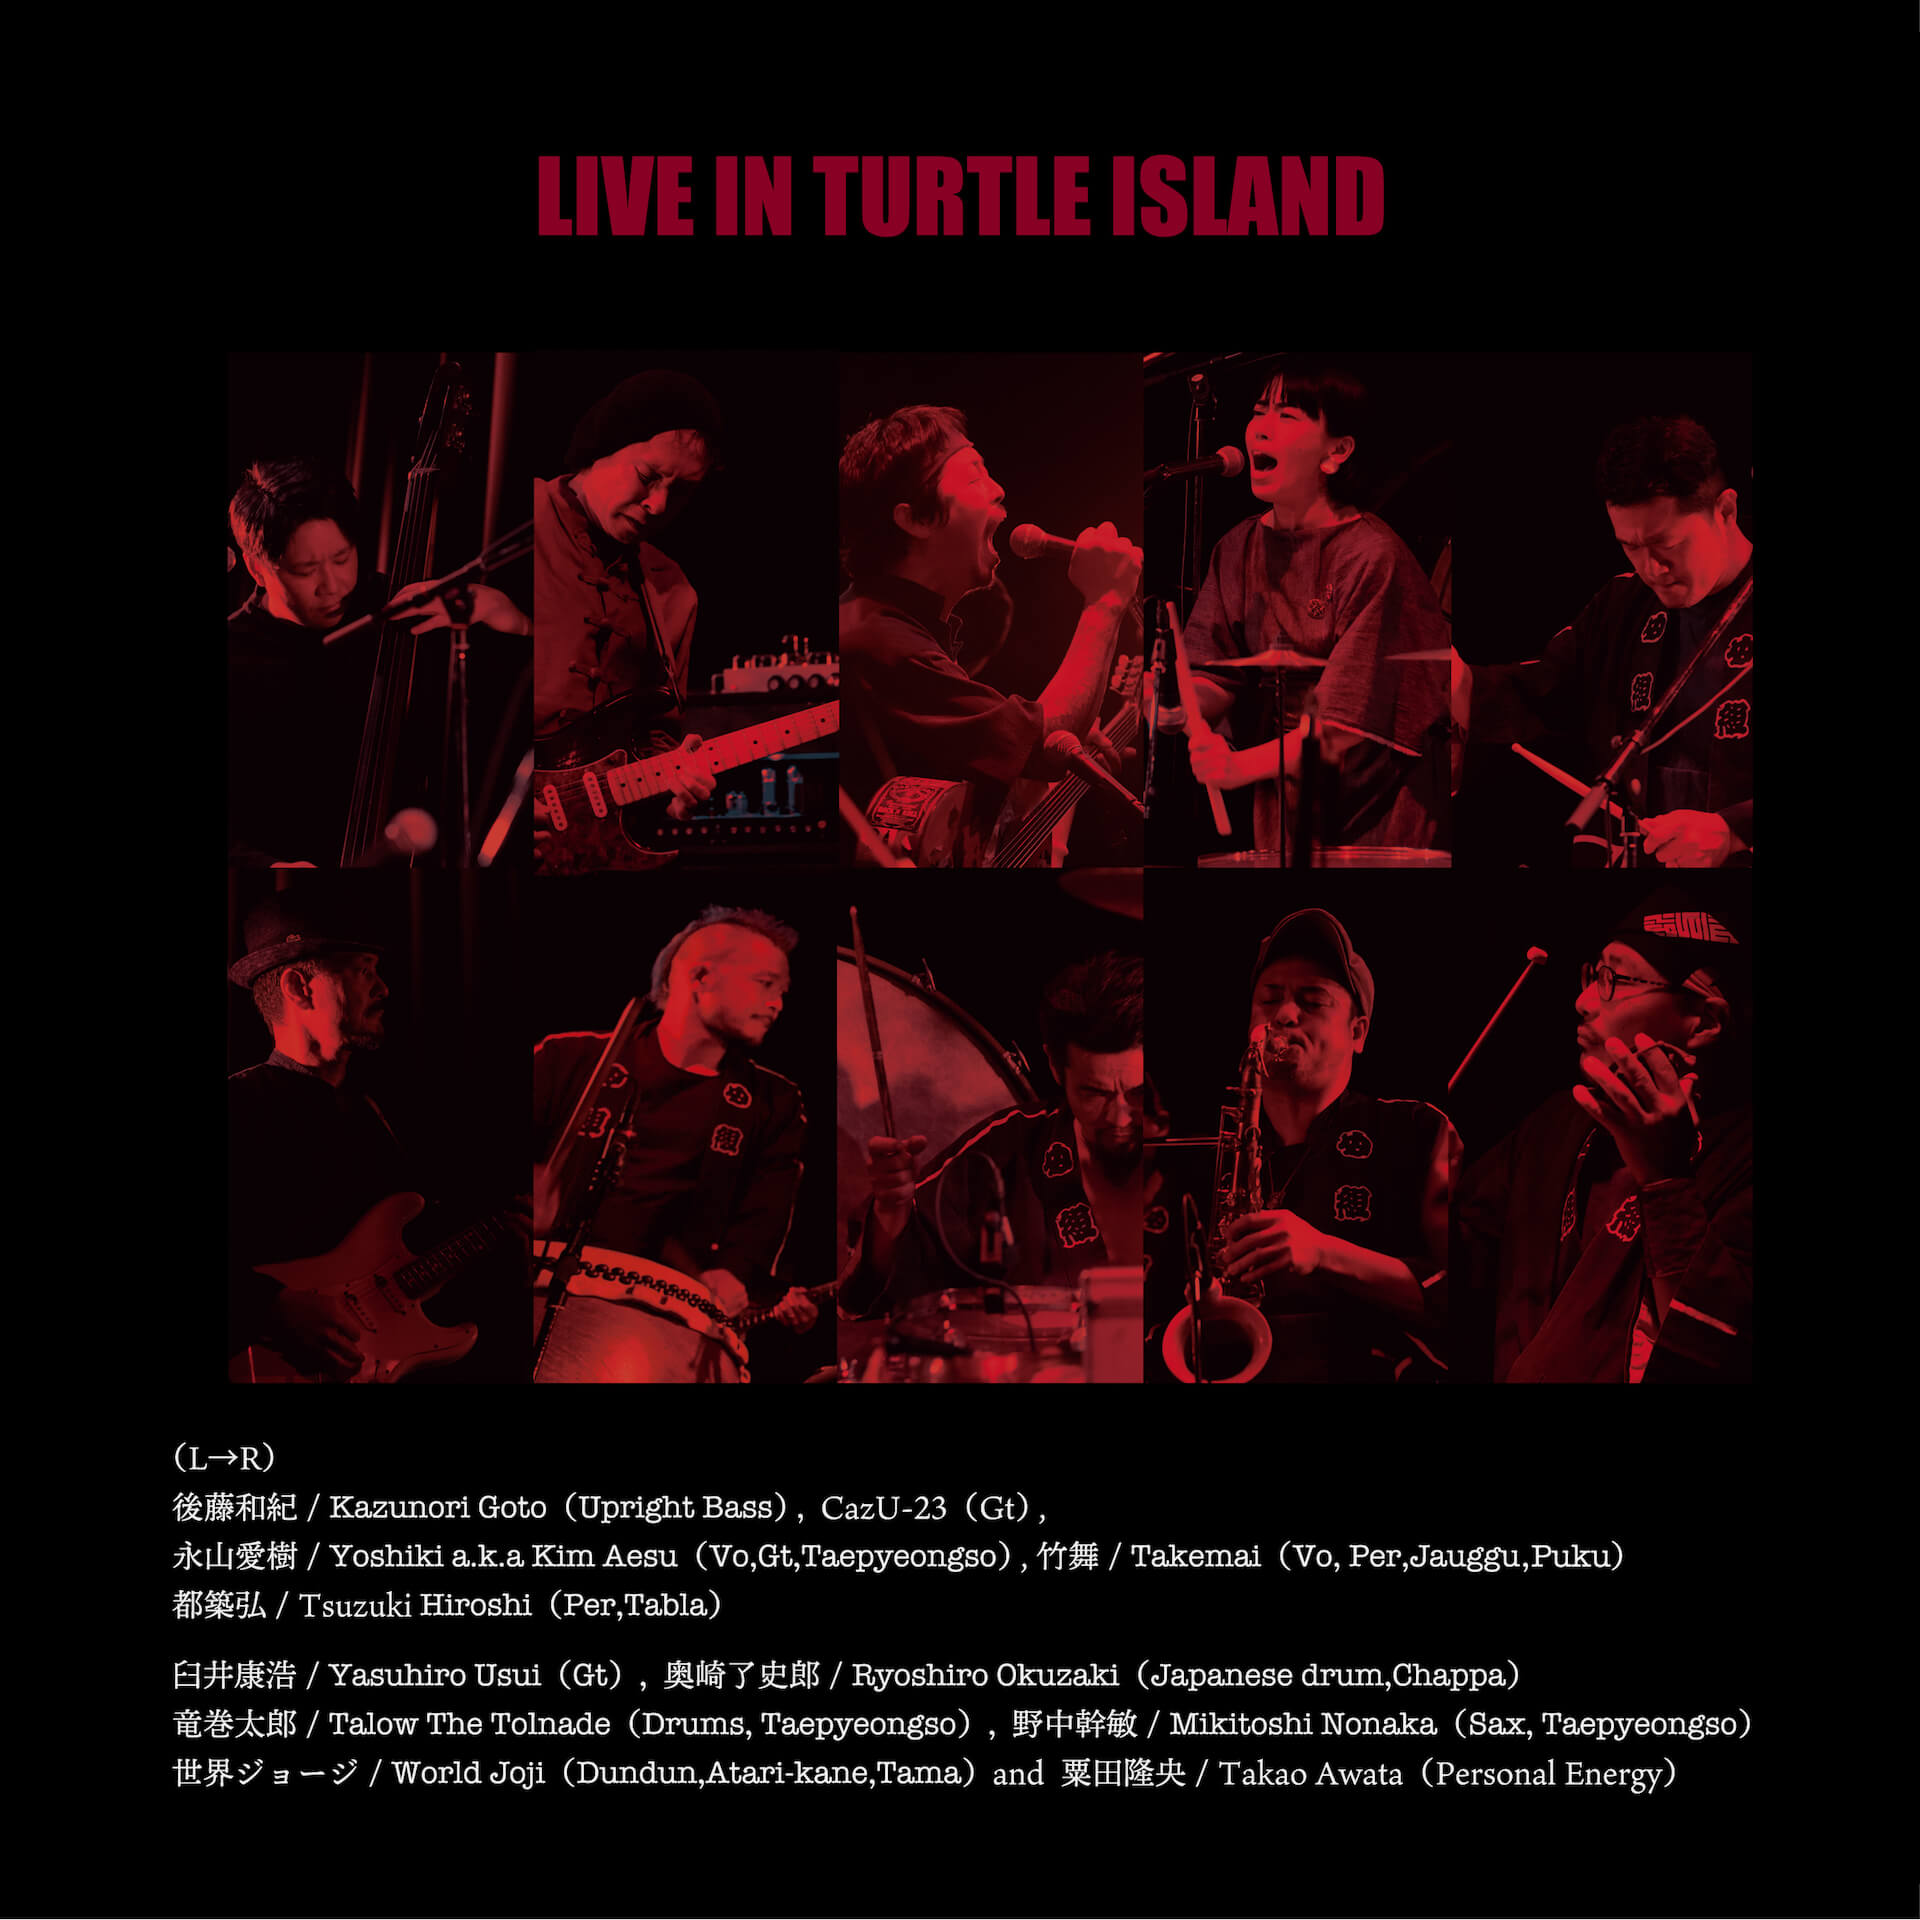 混迷の時代を生き抜くための音がここにある──TURTLE ISLANDの最新作『LIVE IN TURTLE ISLAND』が3LP／2CDでリリース music220127-turtleisland-2